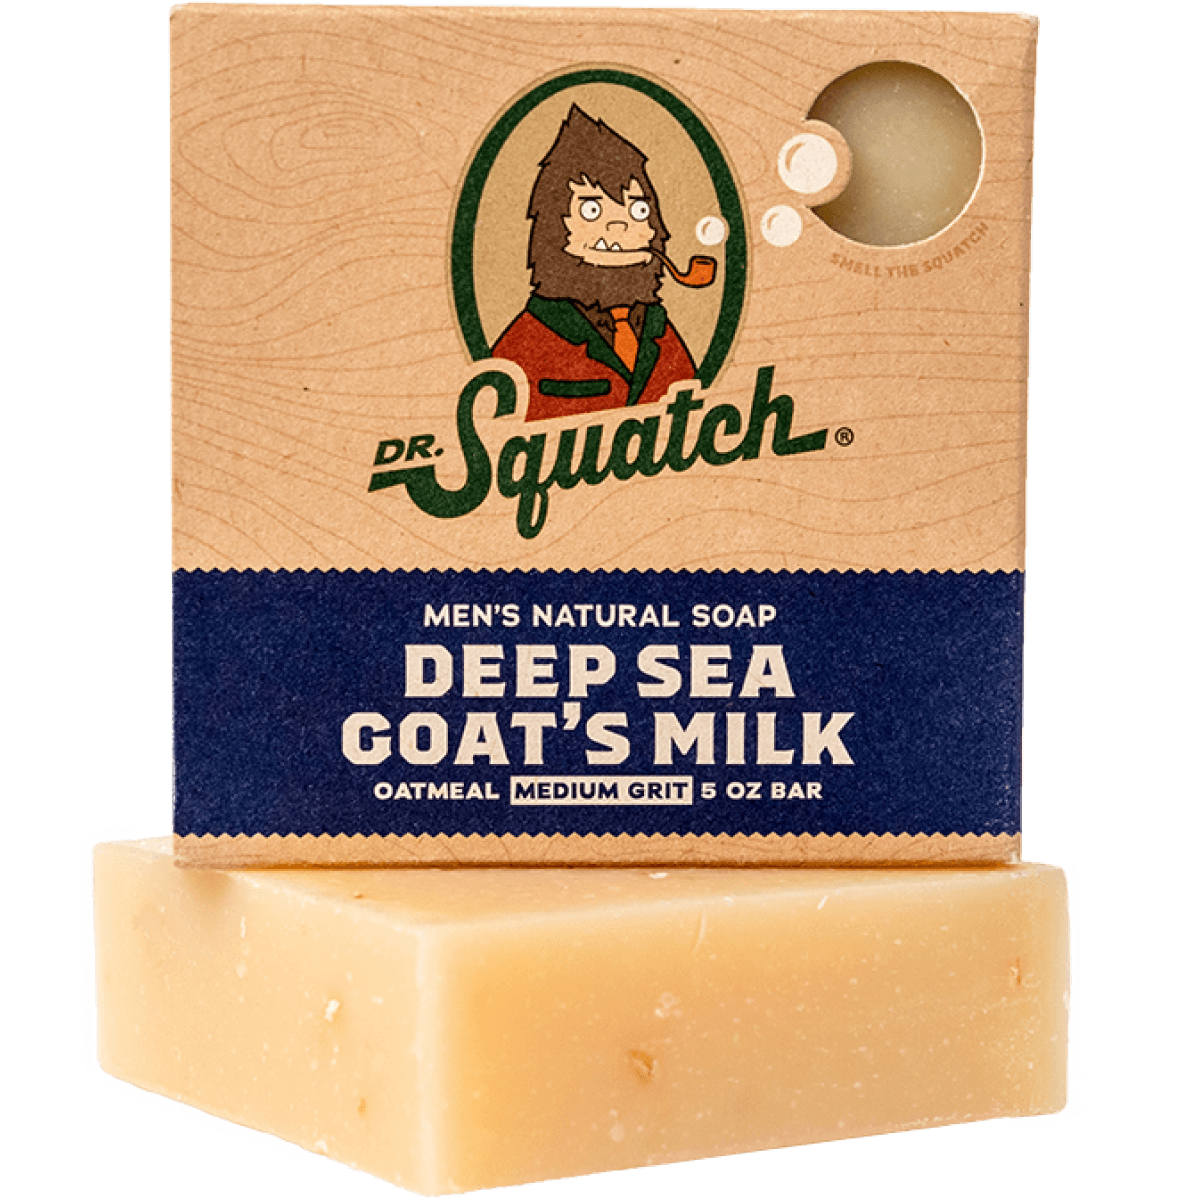 Dr. Squatch Limited Edition Soap - Choccy Milk Bricc, 5 oz